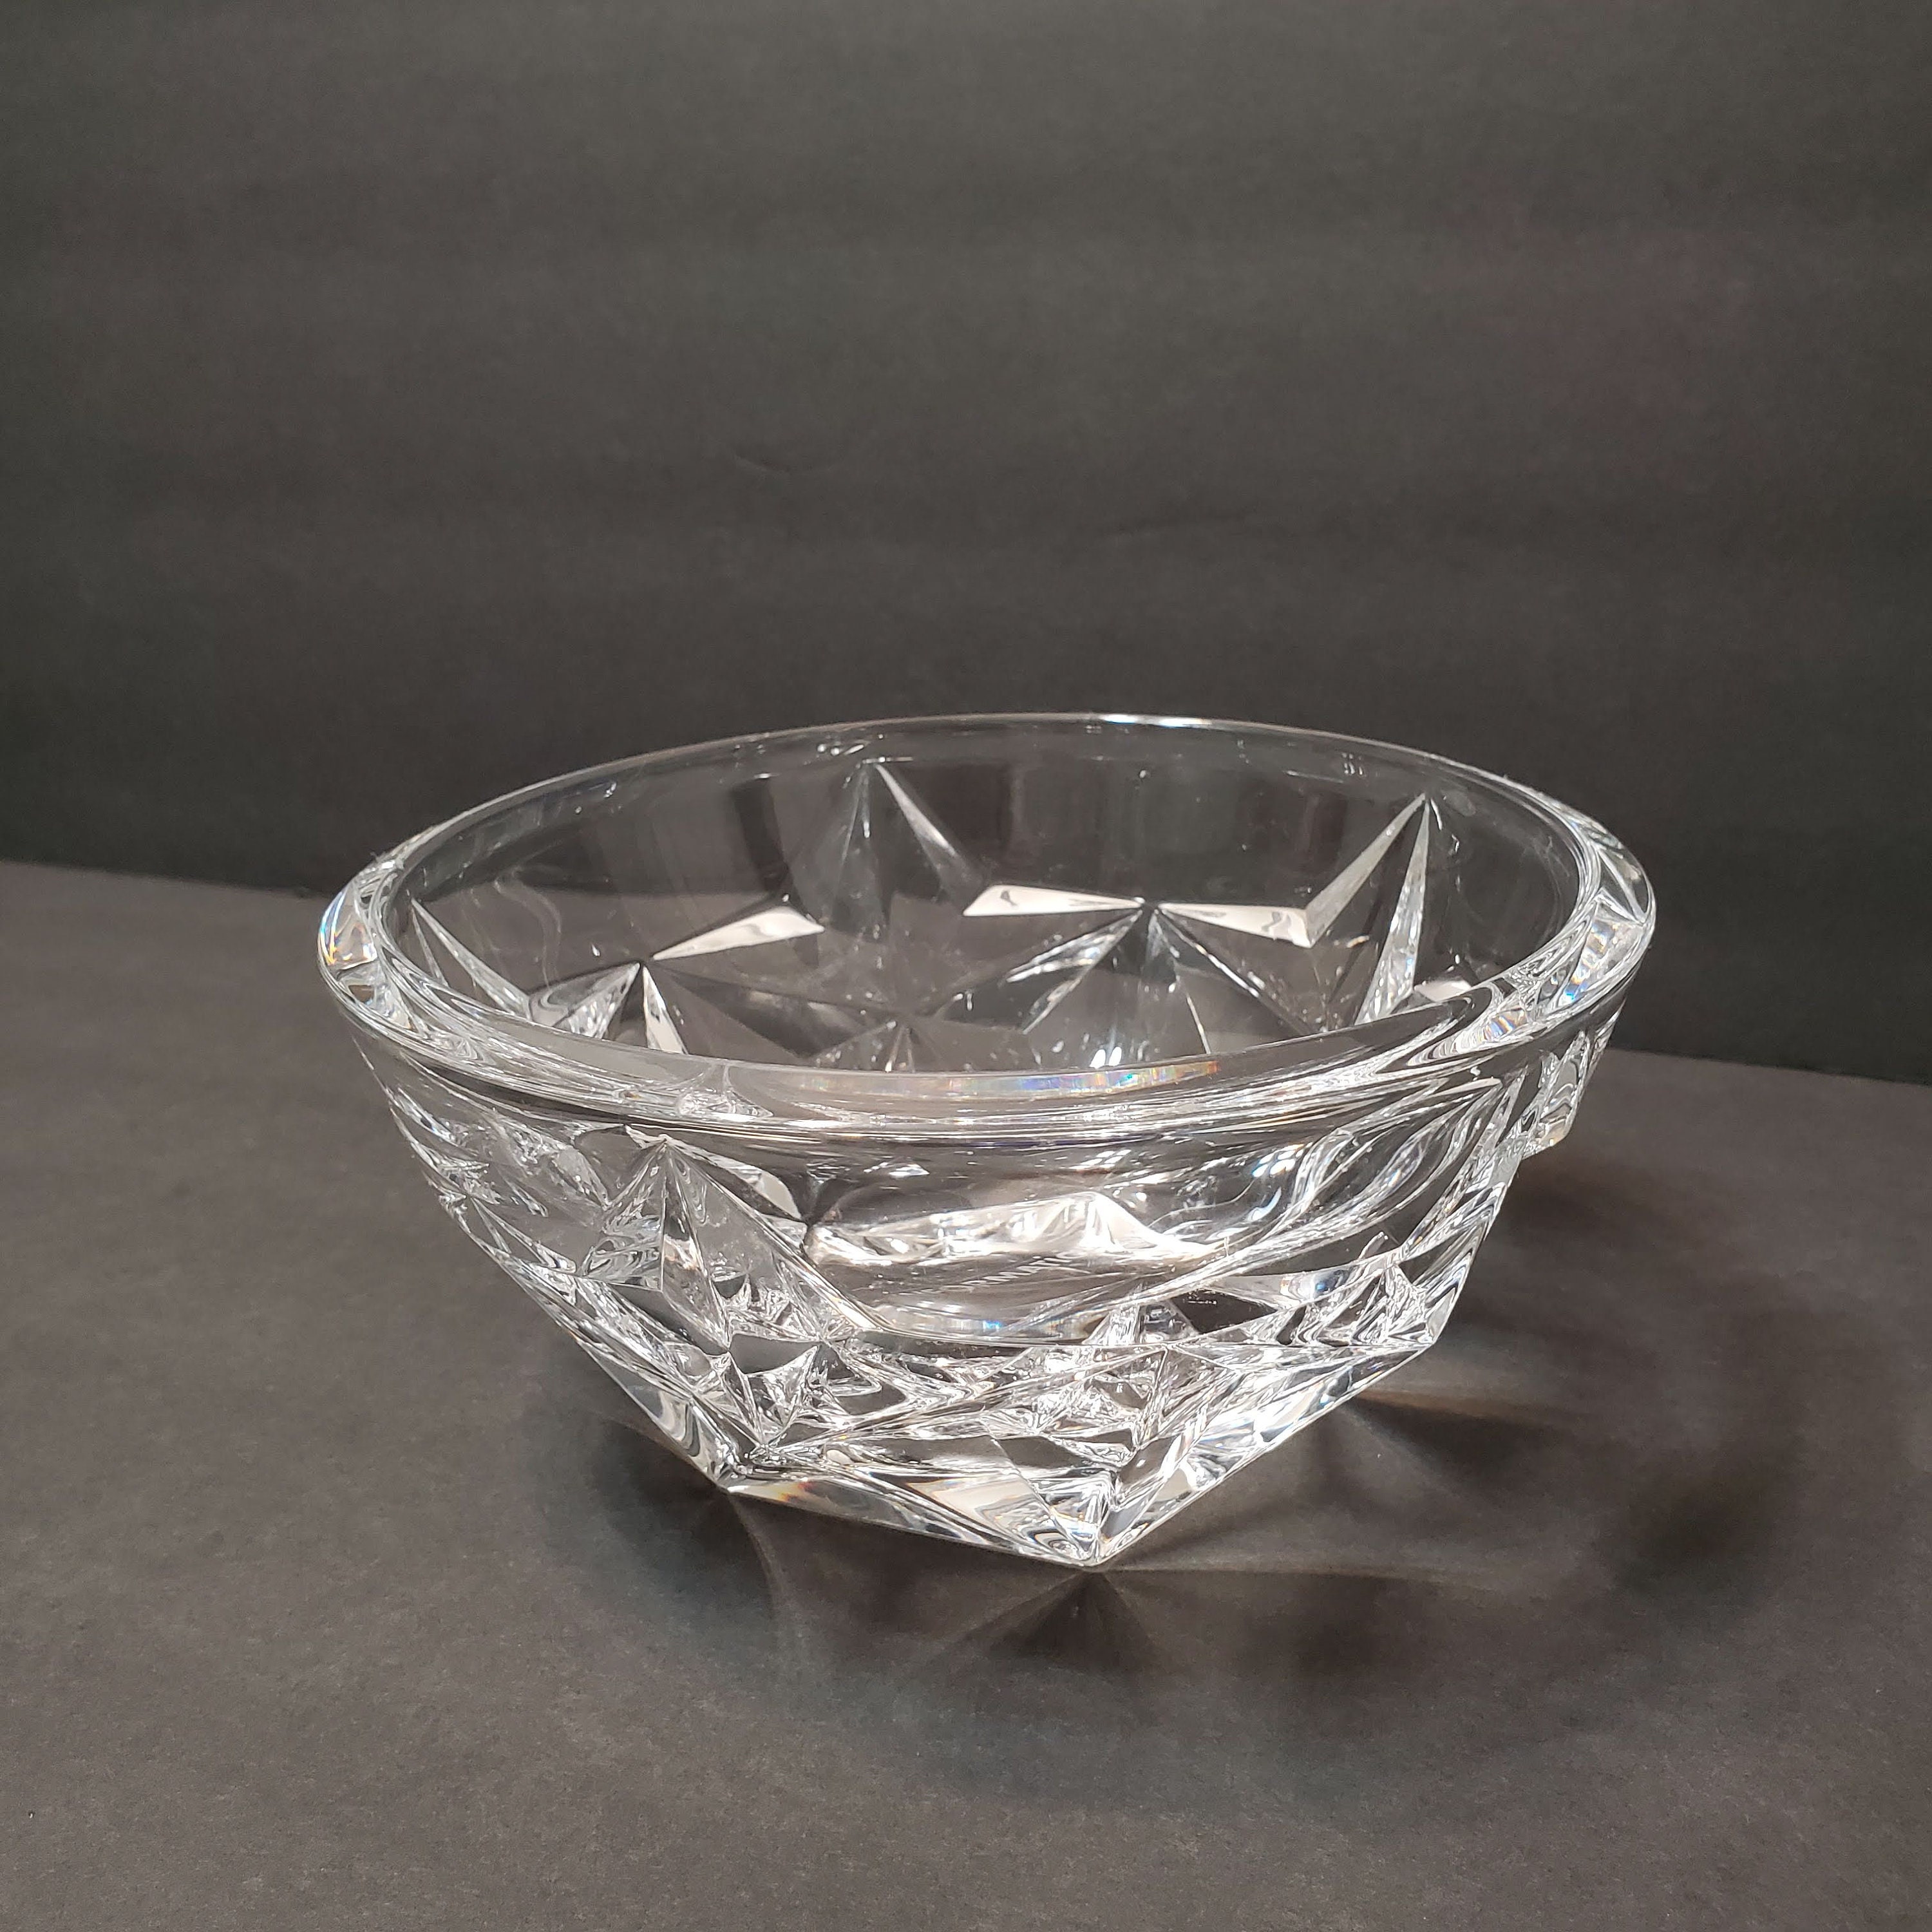 Vintage Tiffany Glass Bowl, Star Design, Cut Lead Crystal 8 Signed,  Informatica, Tiffany Crystal, Crystal Bowl, Tiffany and Co, Glass Bowl 